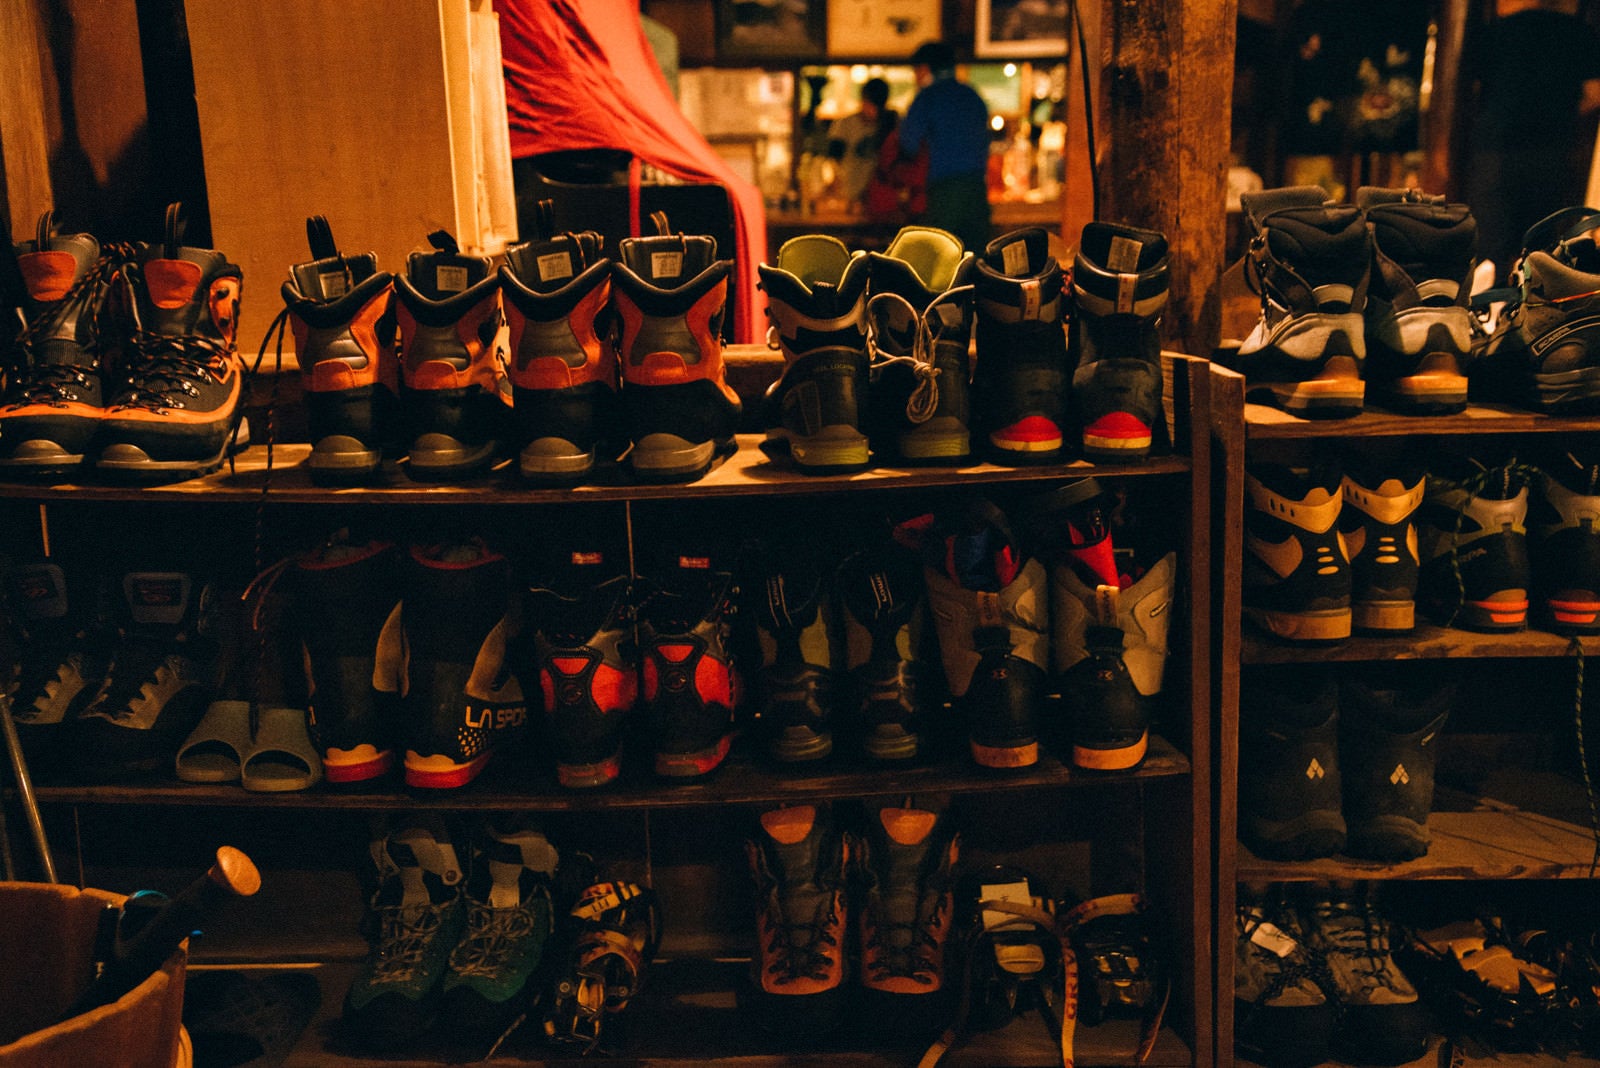 「山小屋の靴棚に並ぶトレッキングシューズ」の写真